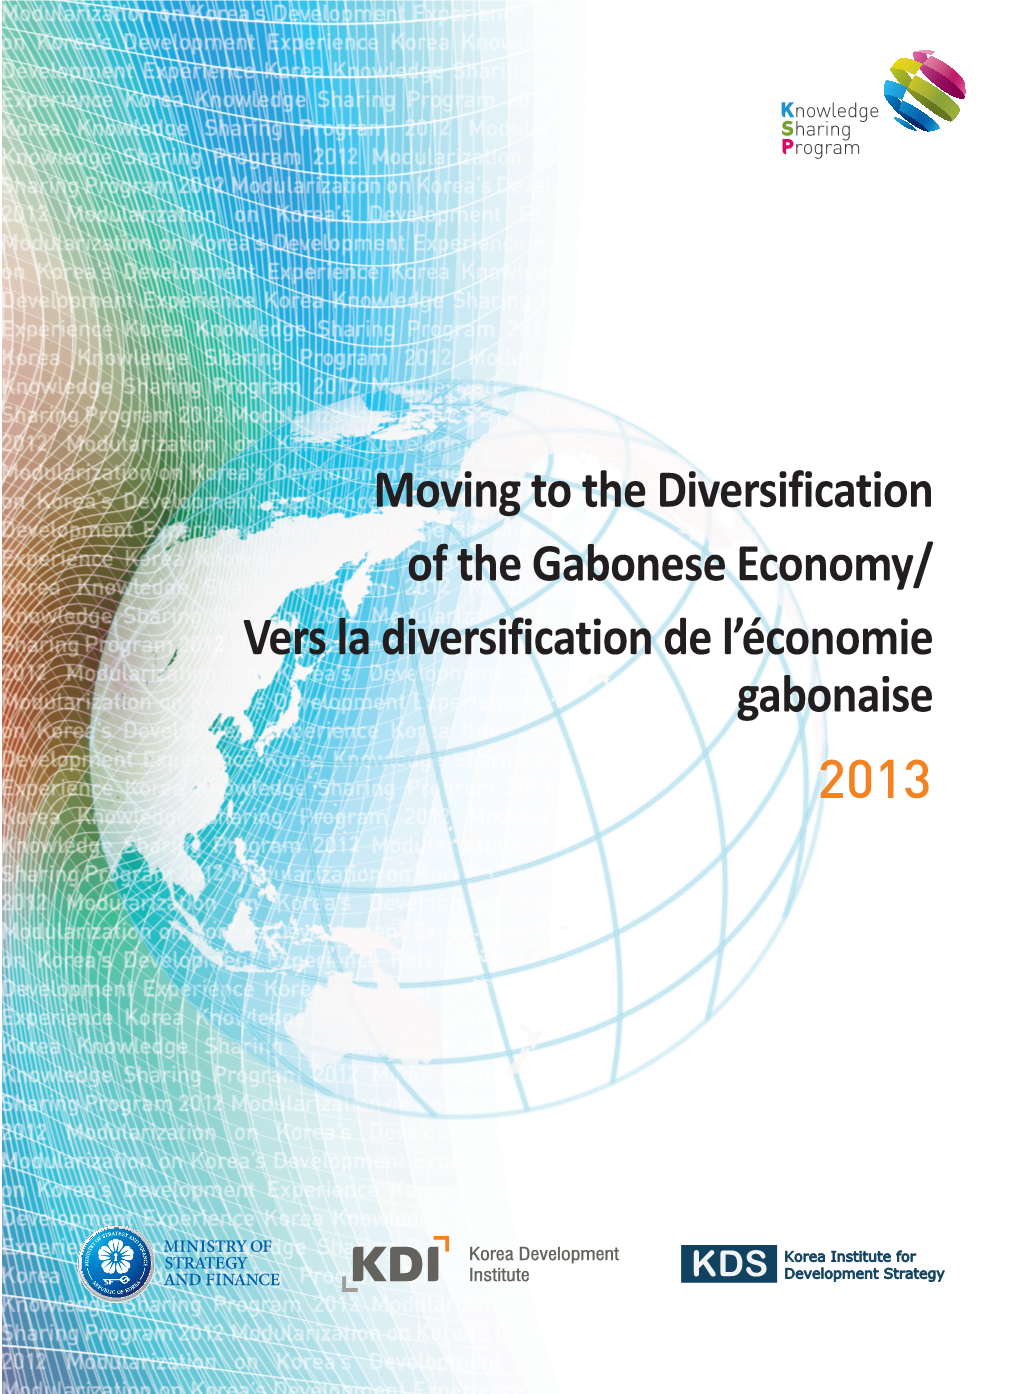 Moving to the Diversification of the Gabonese Economy / Vers La Diversification De L’Économie Gabonaise2013